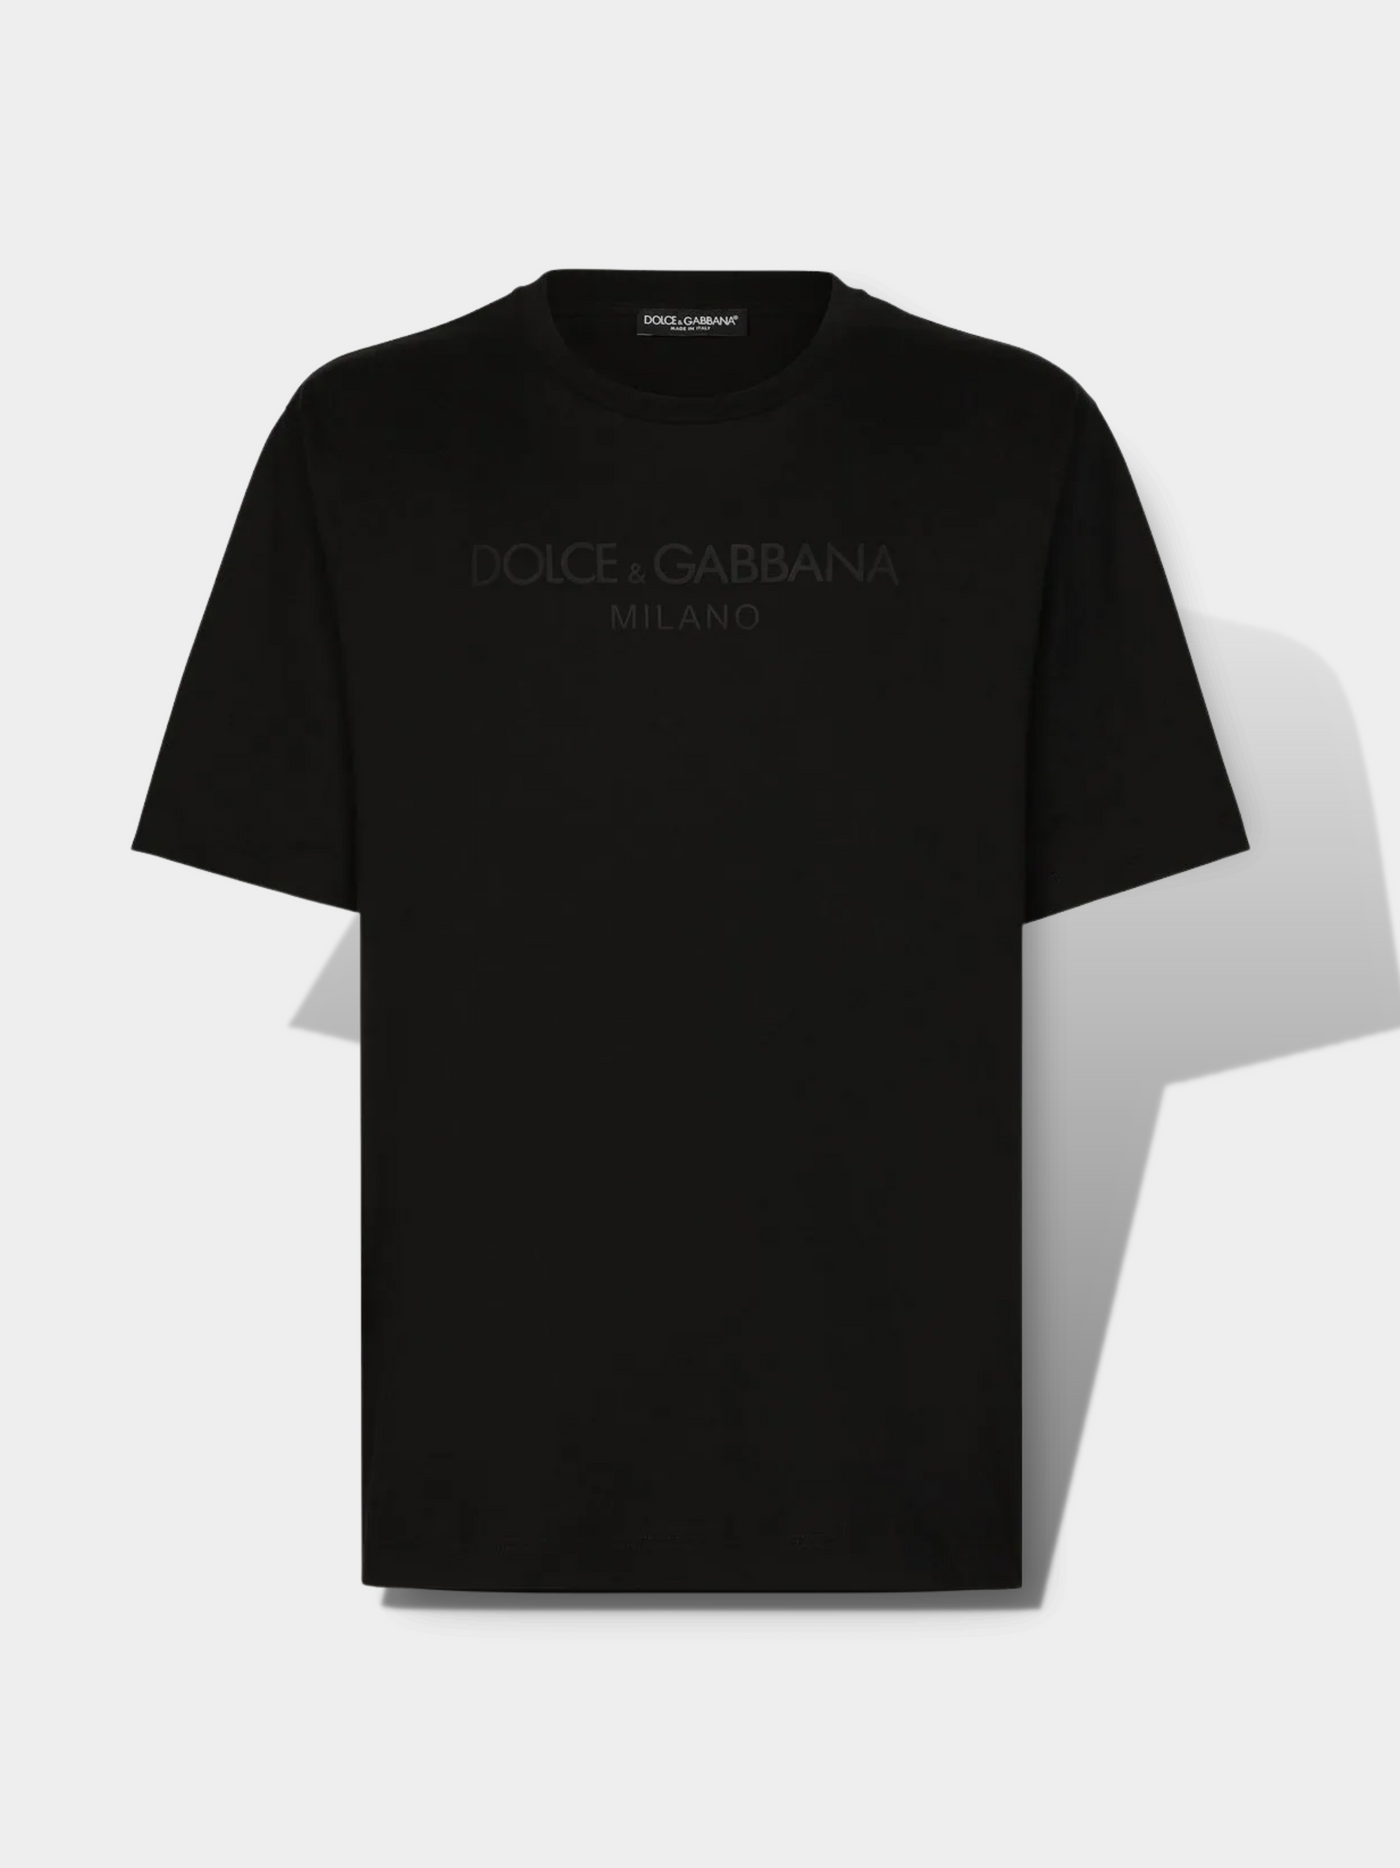 דולצ'ה גאבנה טי שירט צבע שחור Printed T-shirt